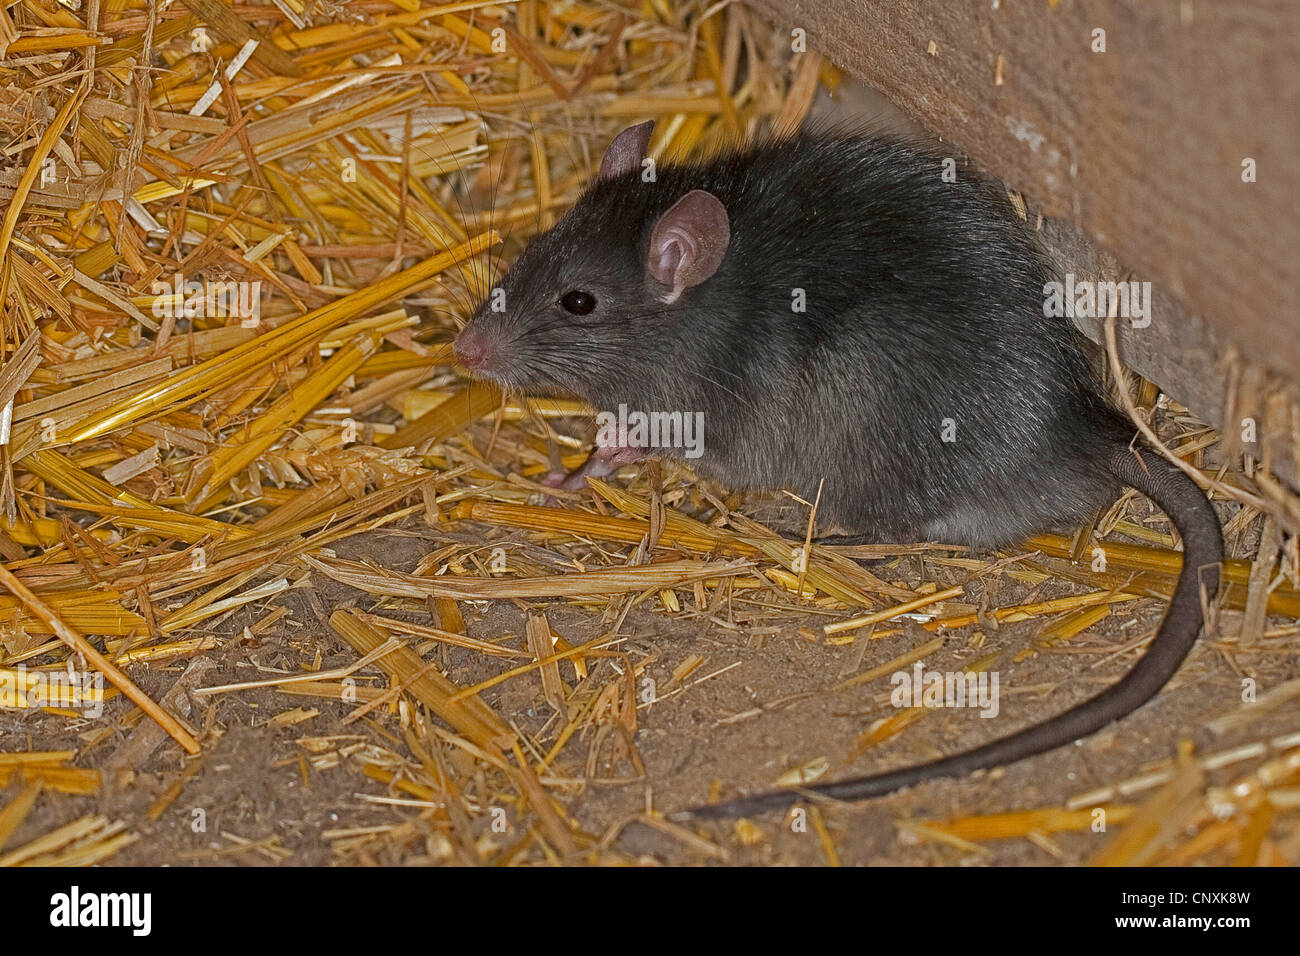 Rat noir, rat noir, rat maison, bateau, rats (Rattus rattus), dans une étable avec de la paille, de l'Allemagne Banque D'Images